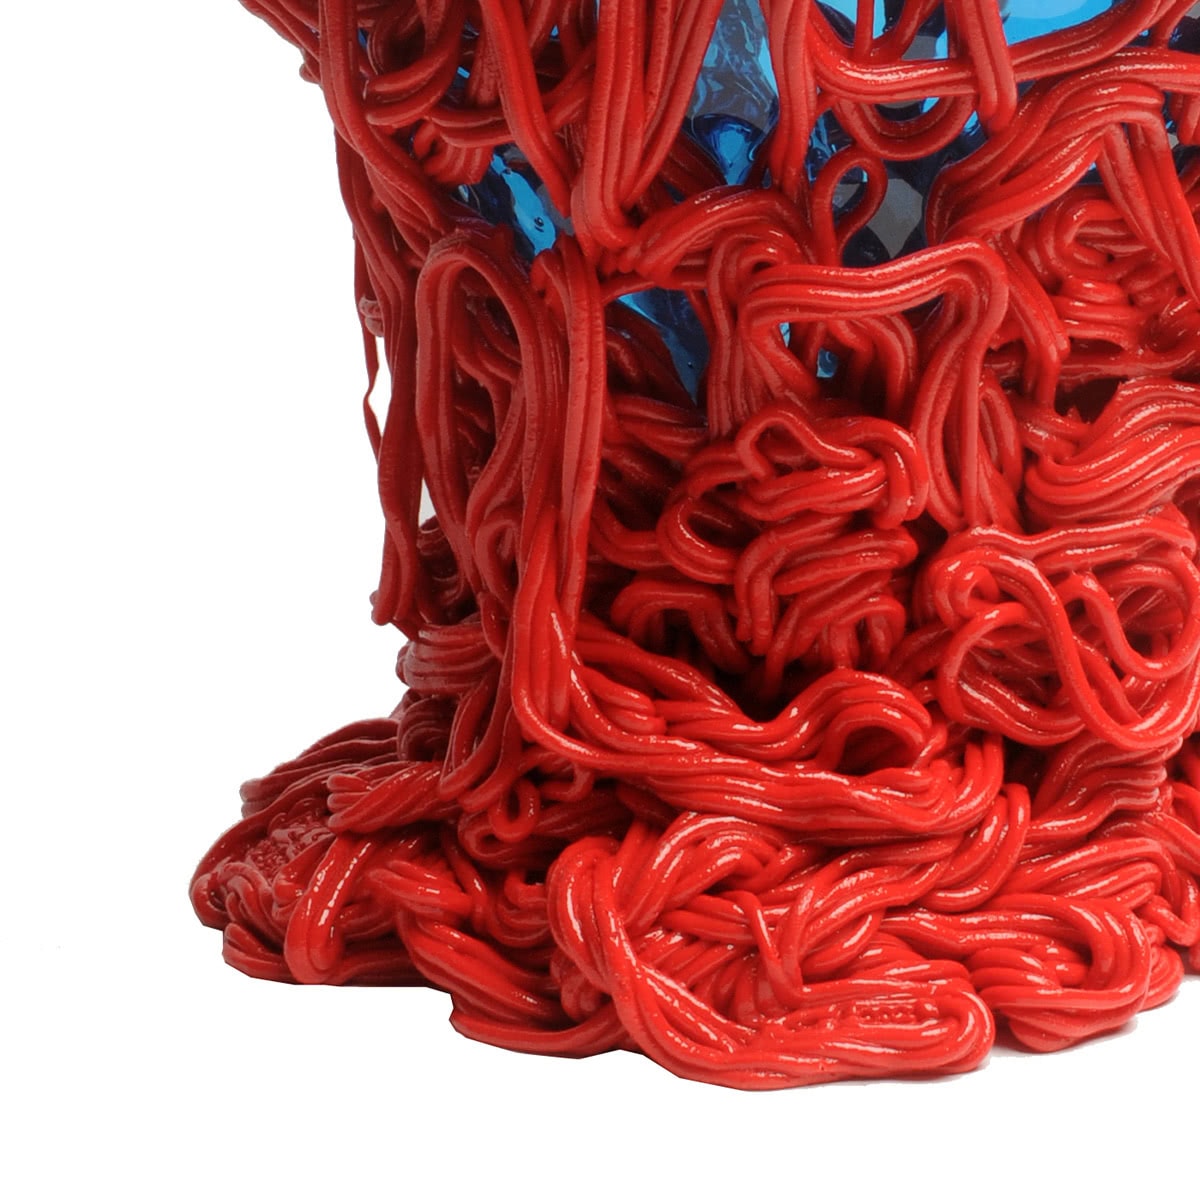 Vaso in resina Spaghetti Special coral-blue by Corsi Design